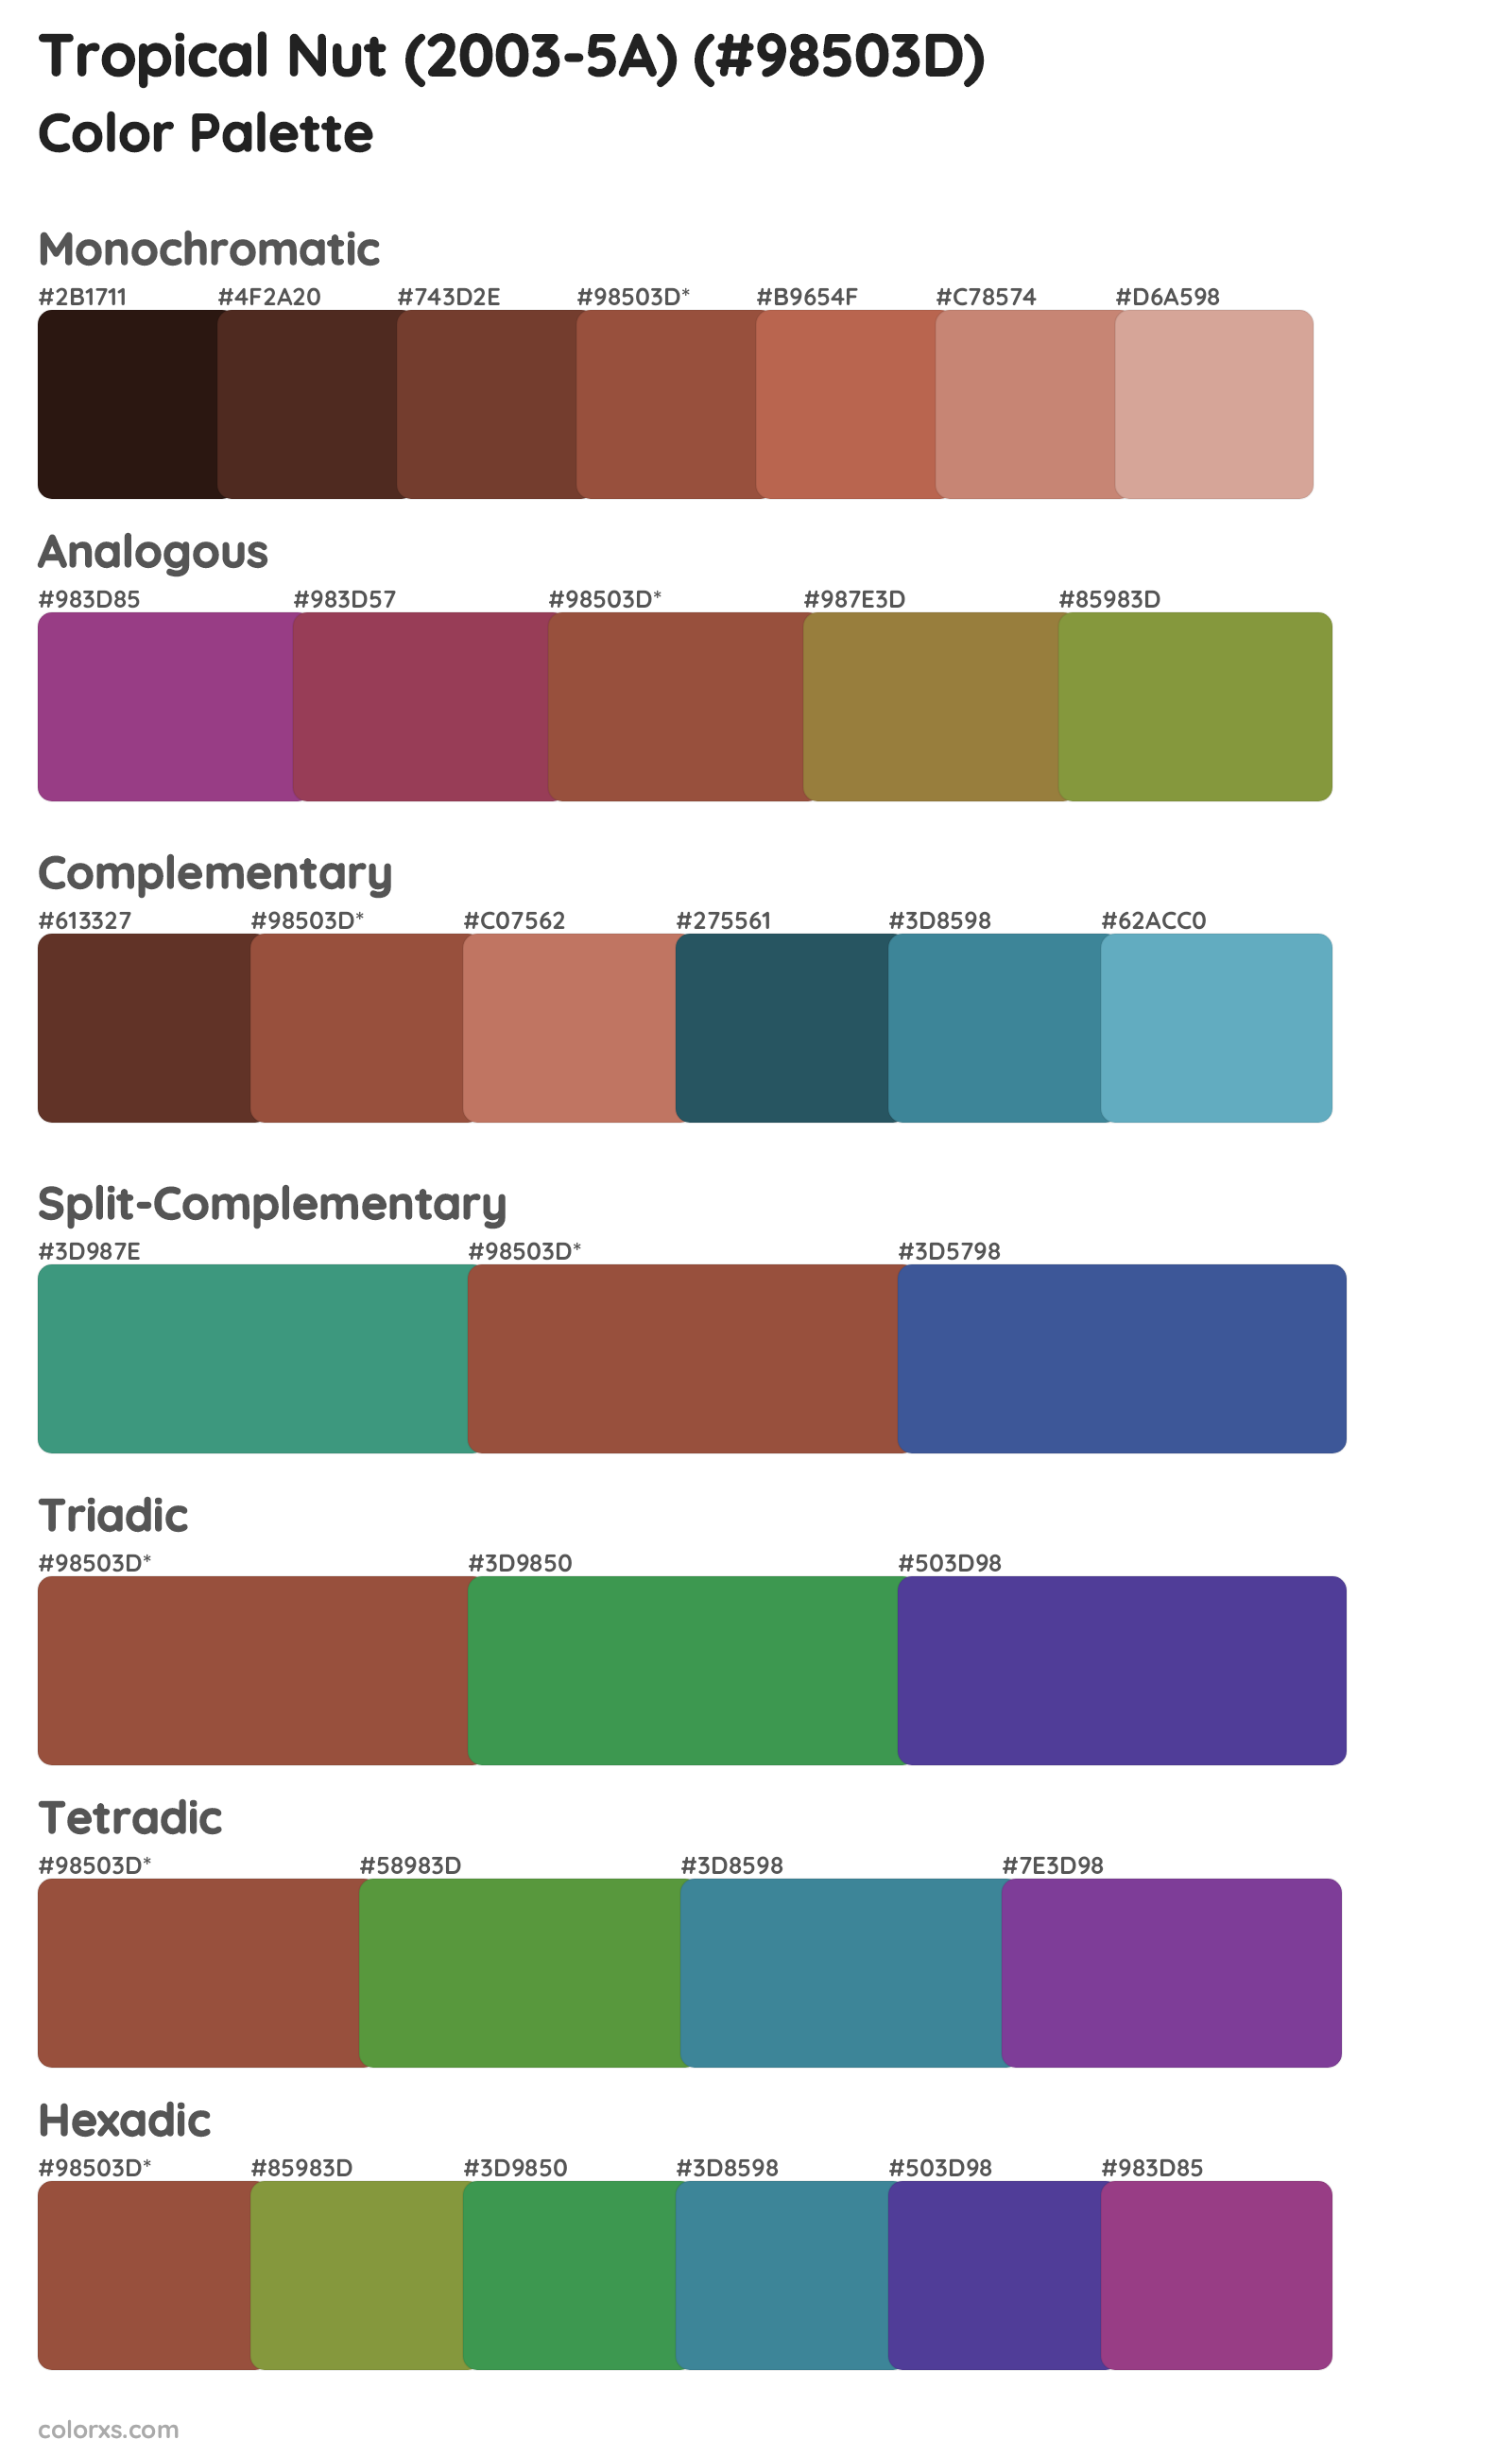 Tropical Nut (2003-5A) Color Scheme Palettes